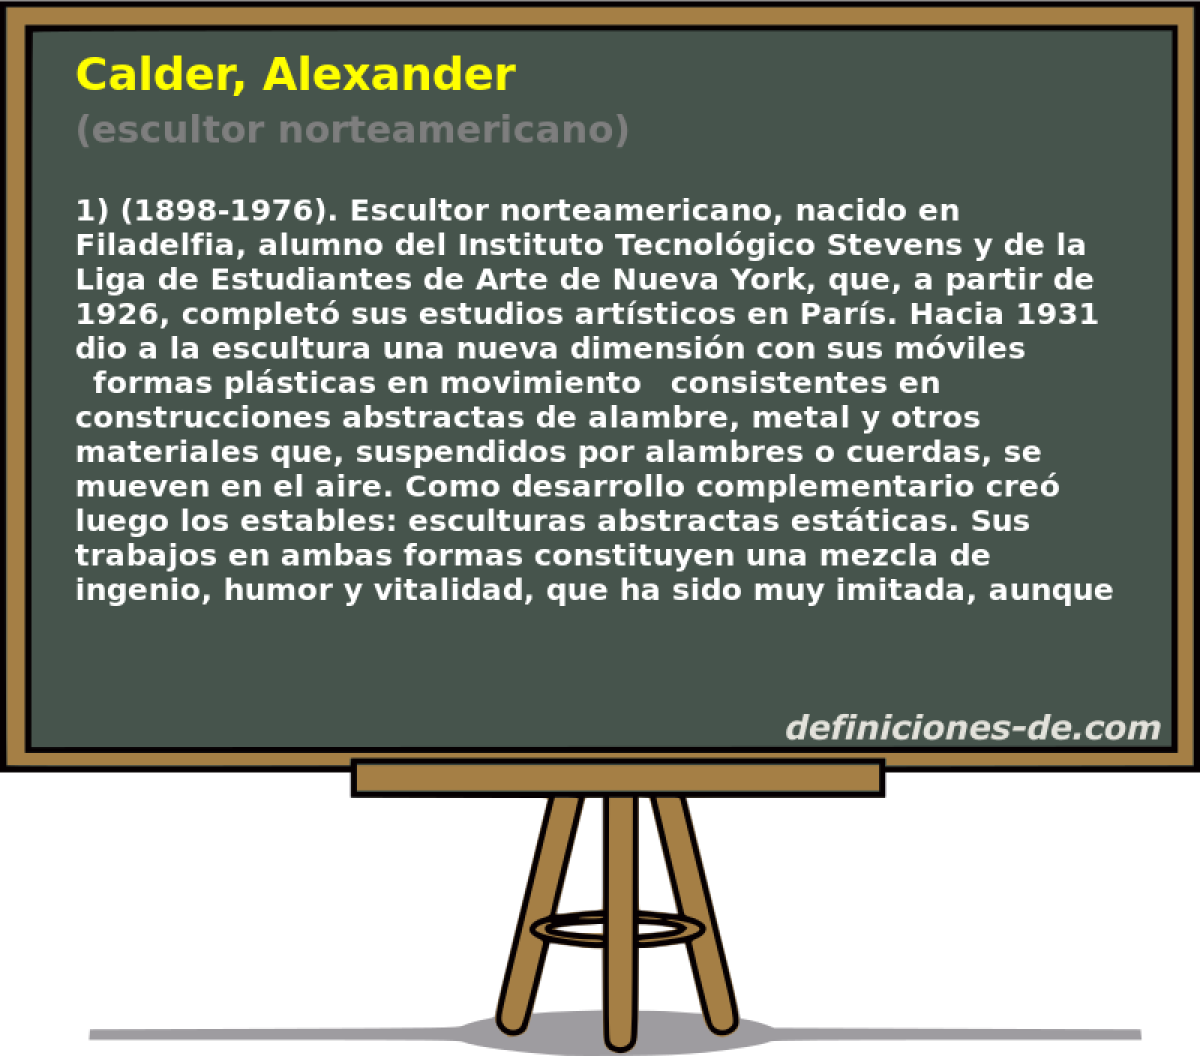 Calder, Alexander (escultor norteamericano)